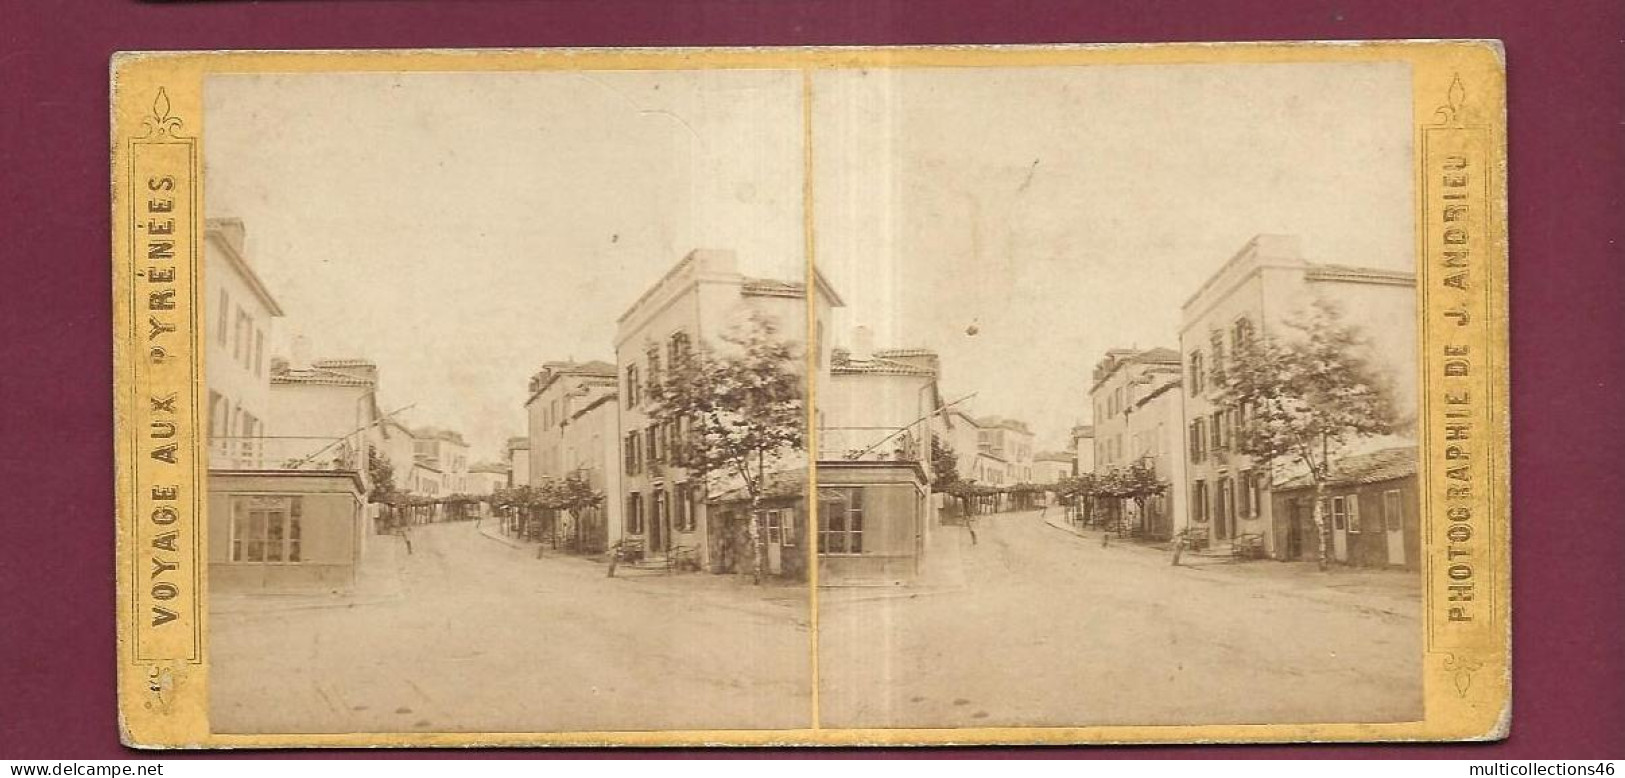 190424 - PHOTO STEREO PAPIER - VOYAGE AUX PYRENEES J ANDRIEU PARIS - BIARRITZ Rue Du Port Vieux - Stereoscoop